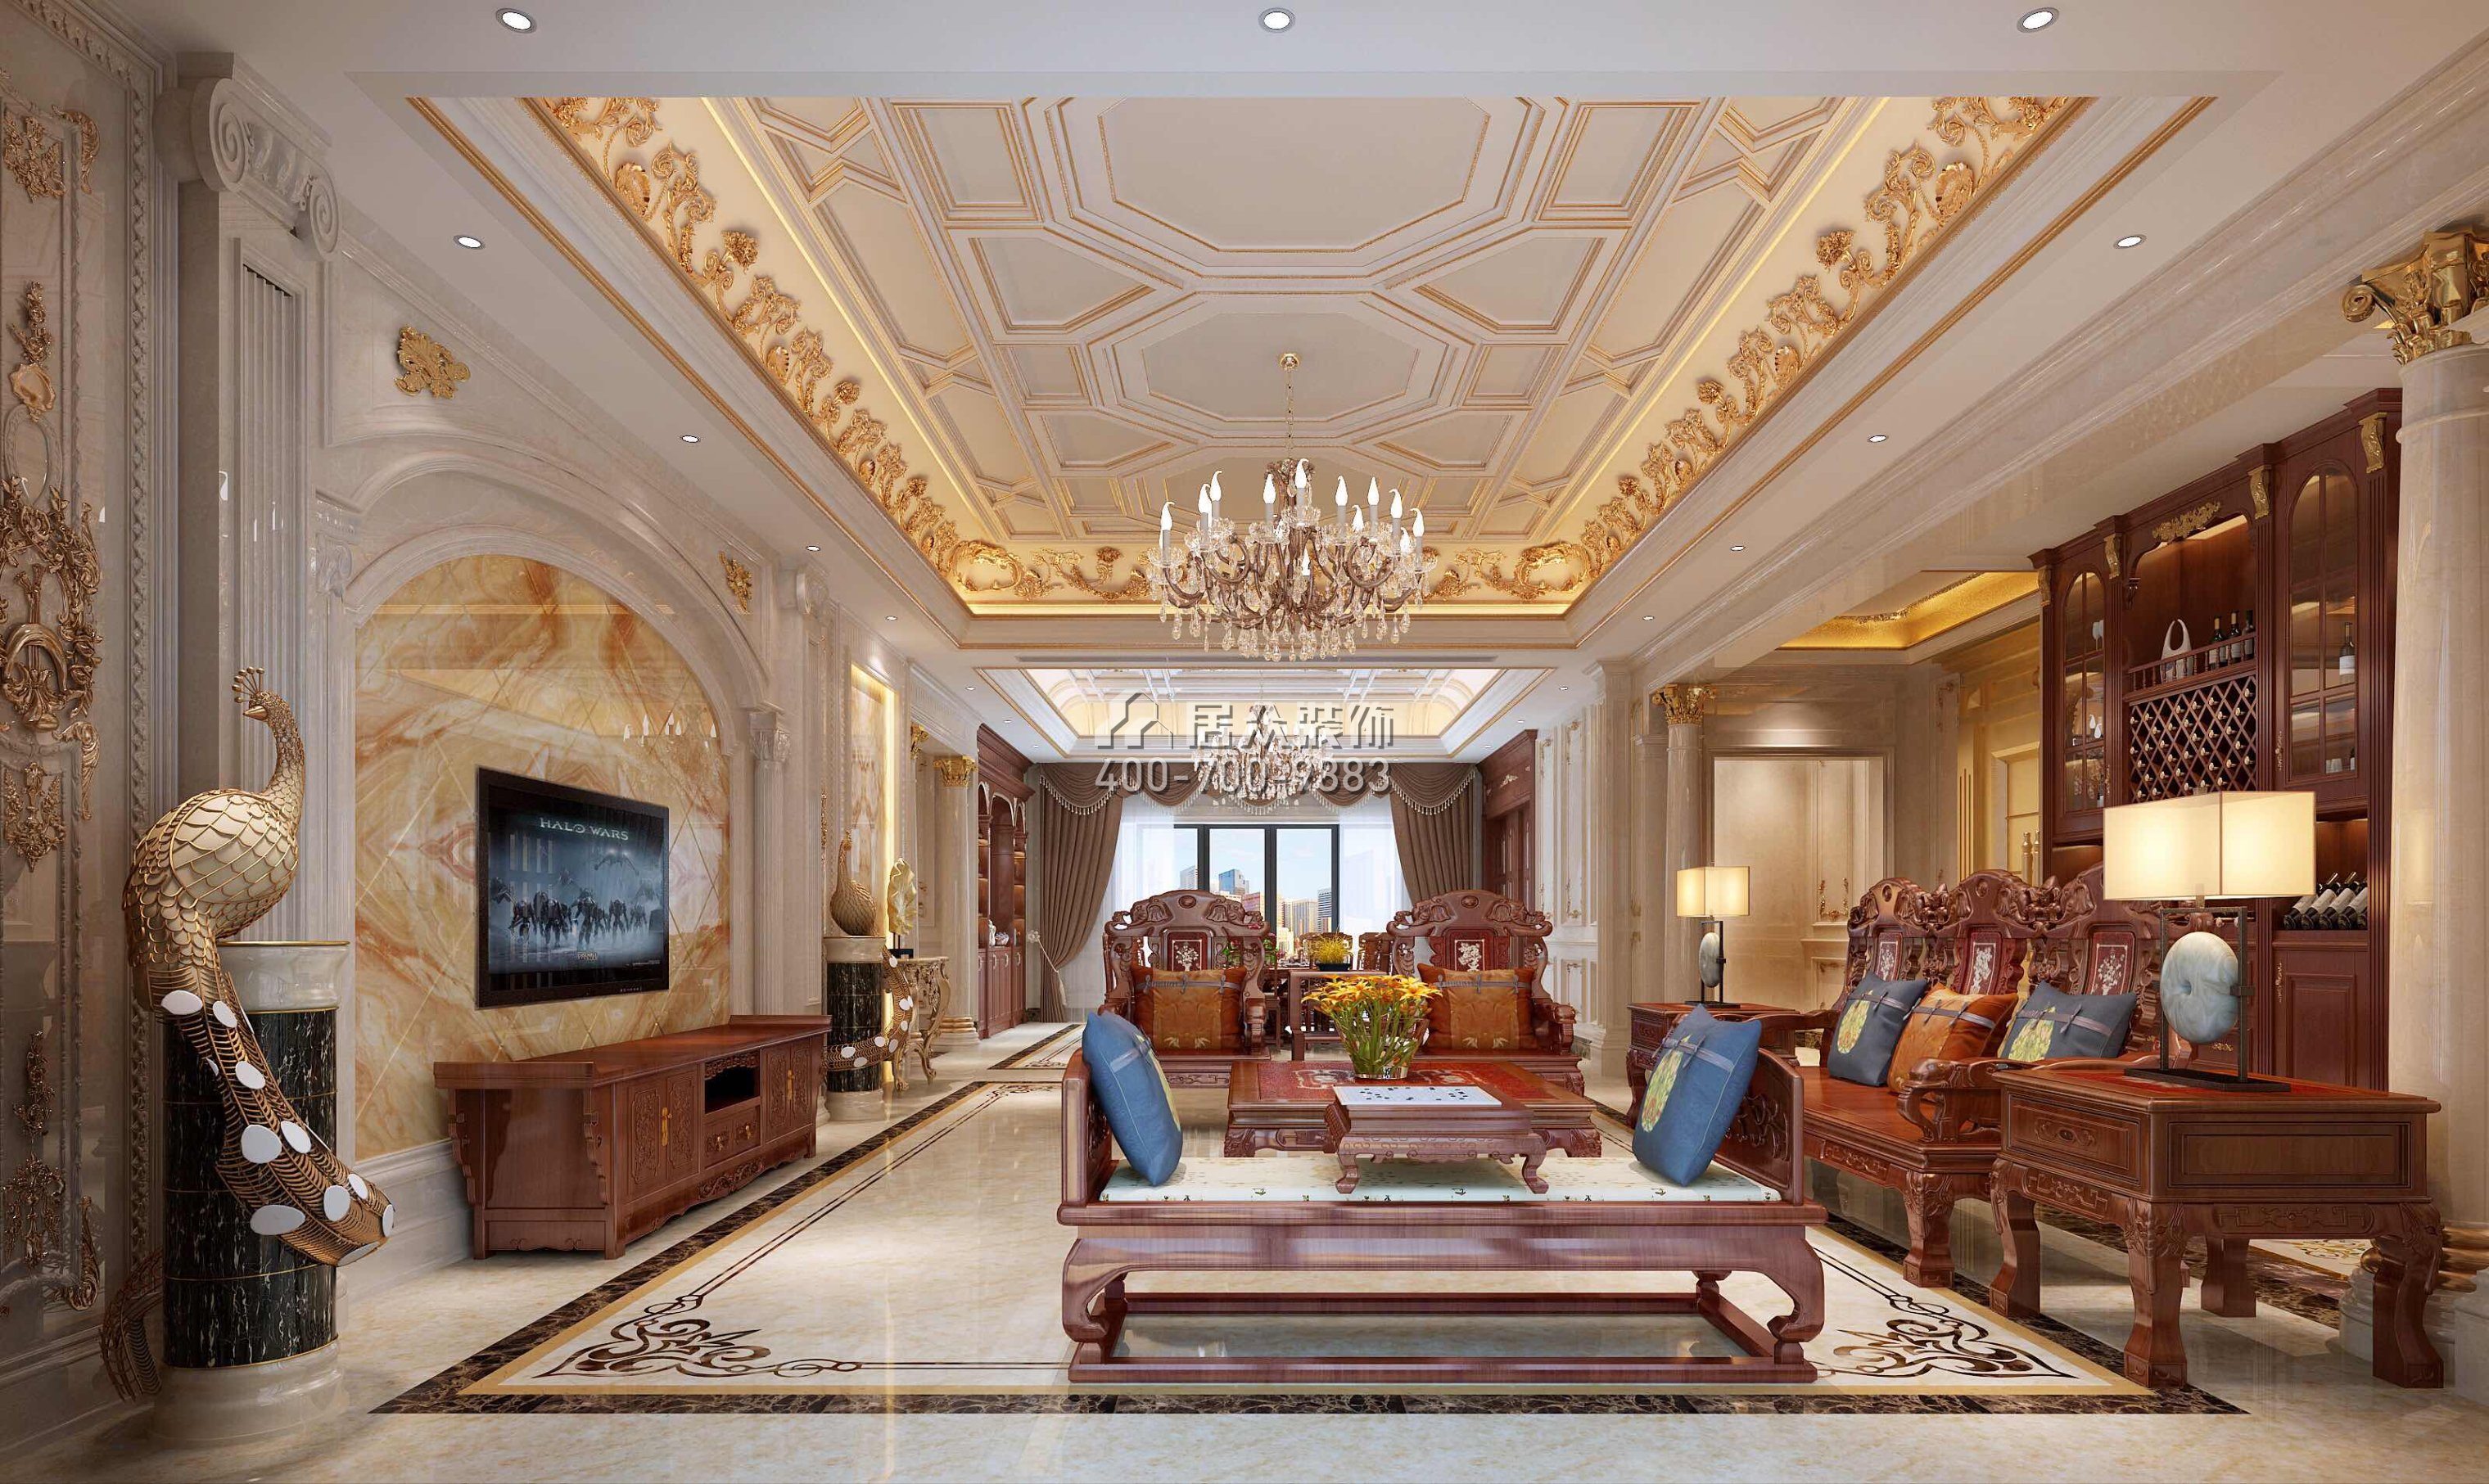 龙泉豪苑560平方米混搭风格平层户型客厅装修效果图